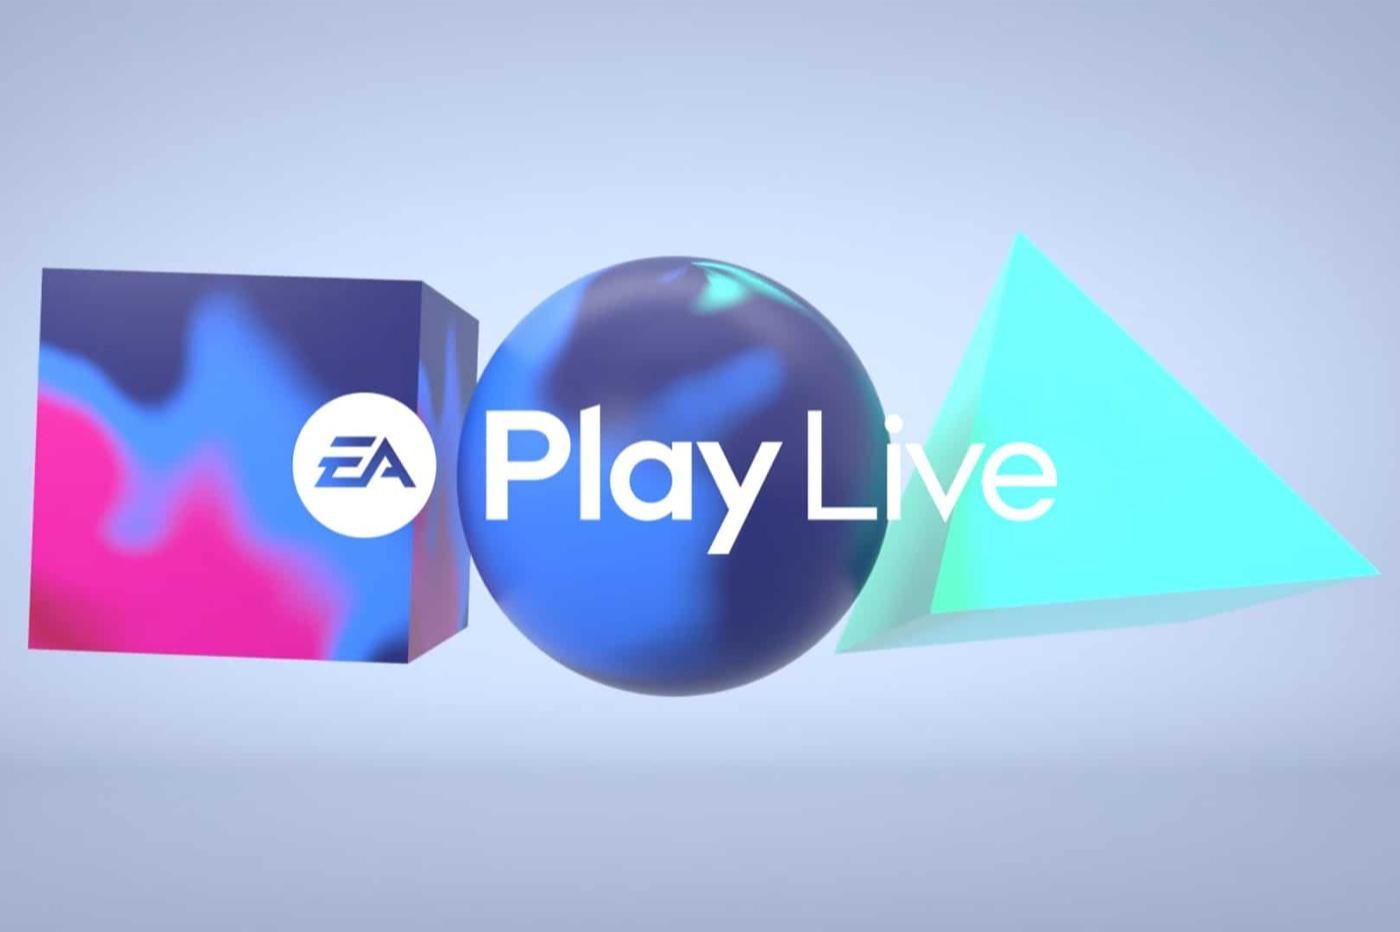 EA Play Live Logo